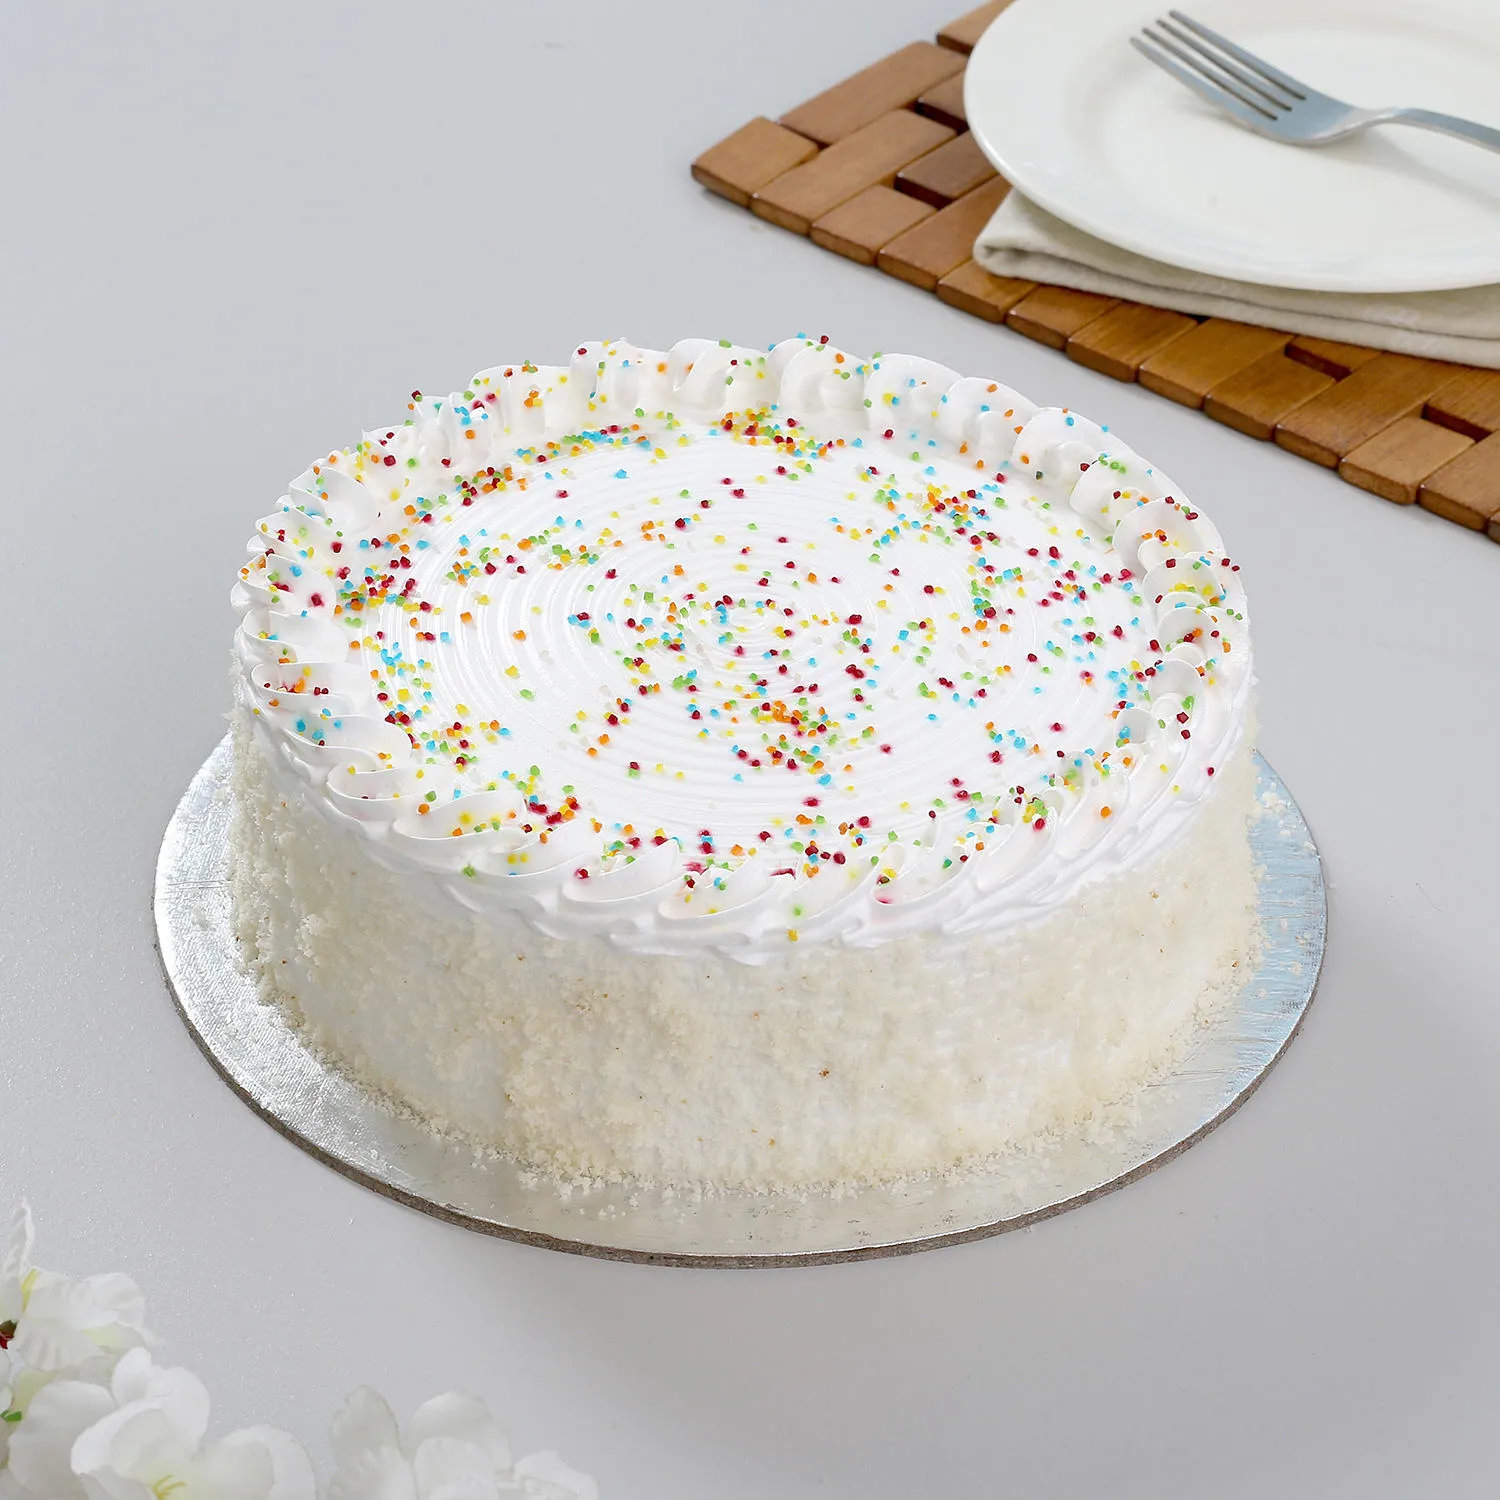 Special Delicious Vanilla Cake - 1 KG